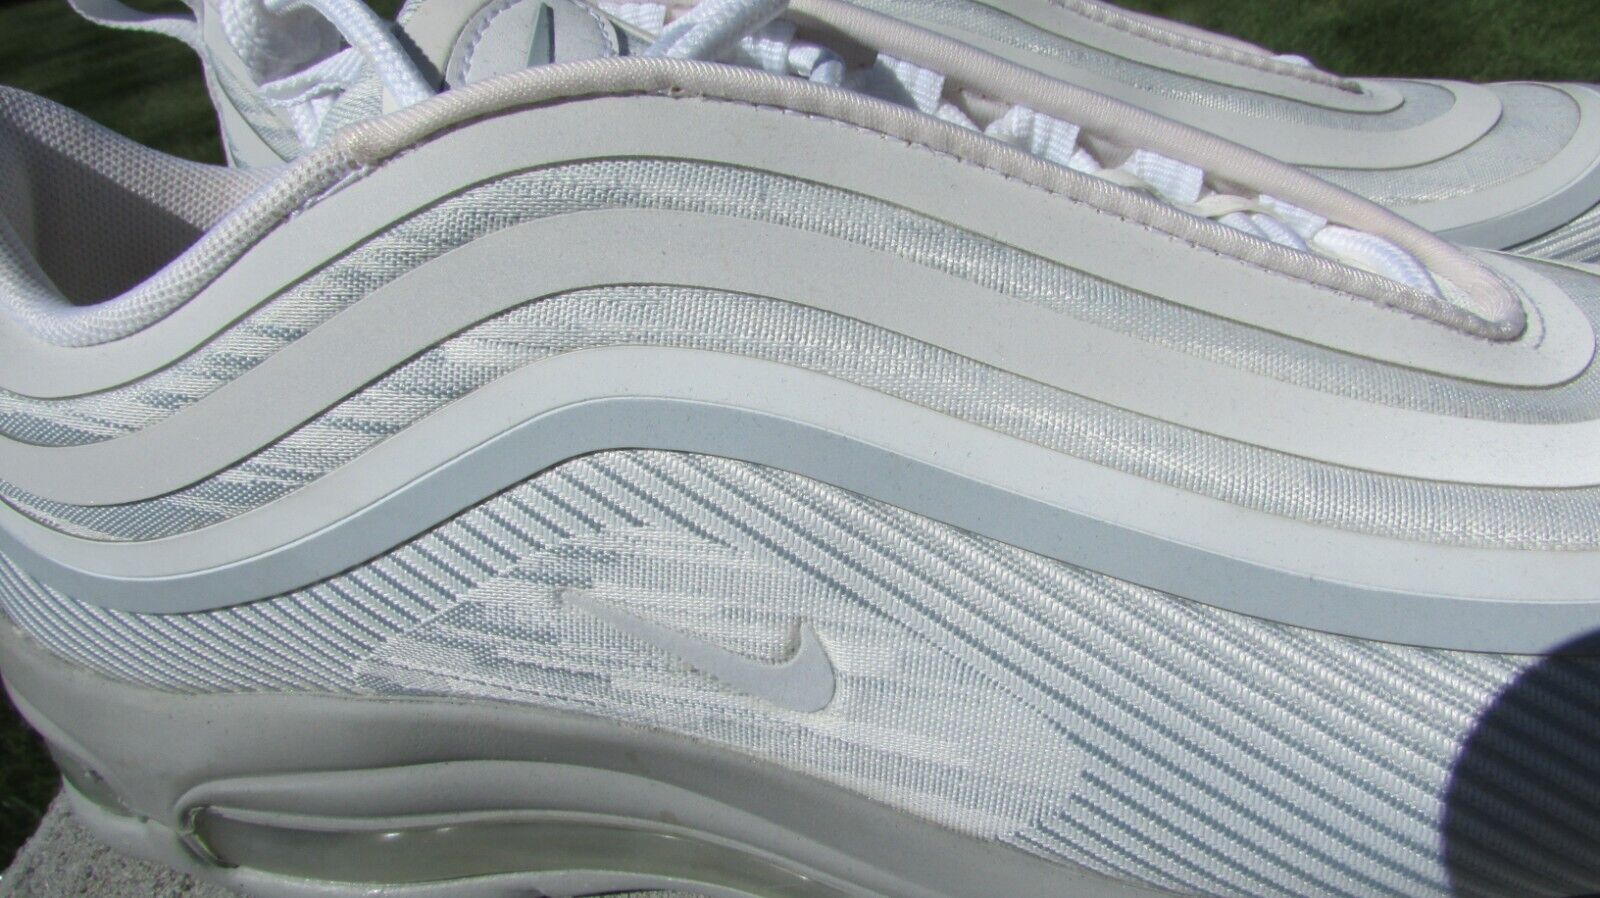 Nike 10.5 Air Jordan Black High Top Vintage Tennis Sneaker Athletic Shoe